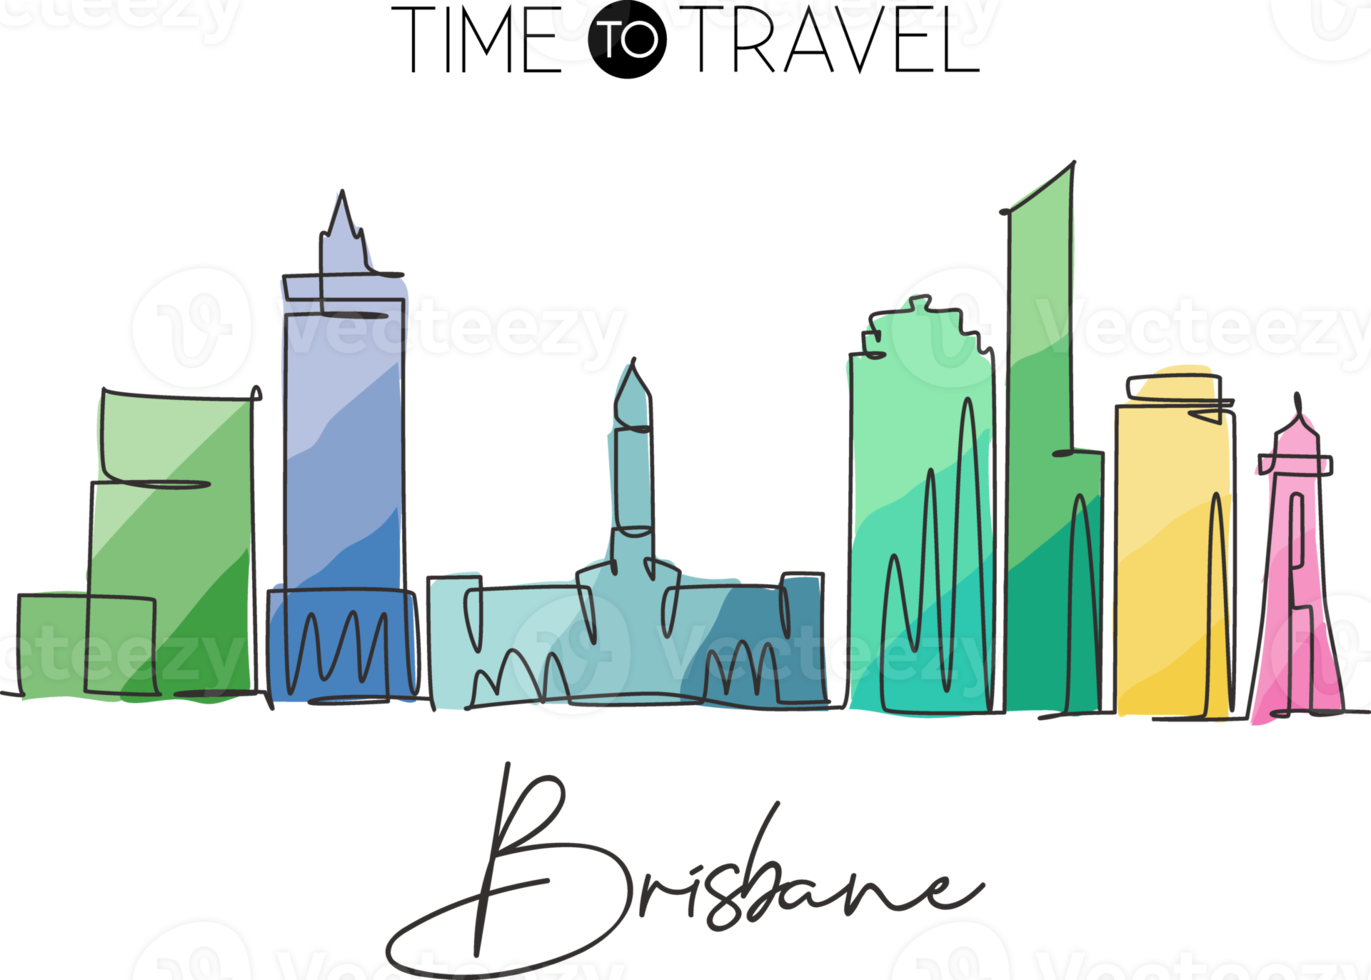 um desenho de linha contínua do horizonte da cidade de brisbane, austrália. belo marco. cartaz de férias de viagens de turismo de paisagem mundial. ilustração vetorial de design de desenho de linha única de traço elegante editável png